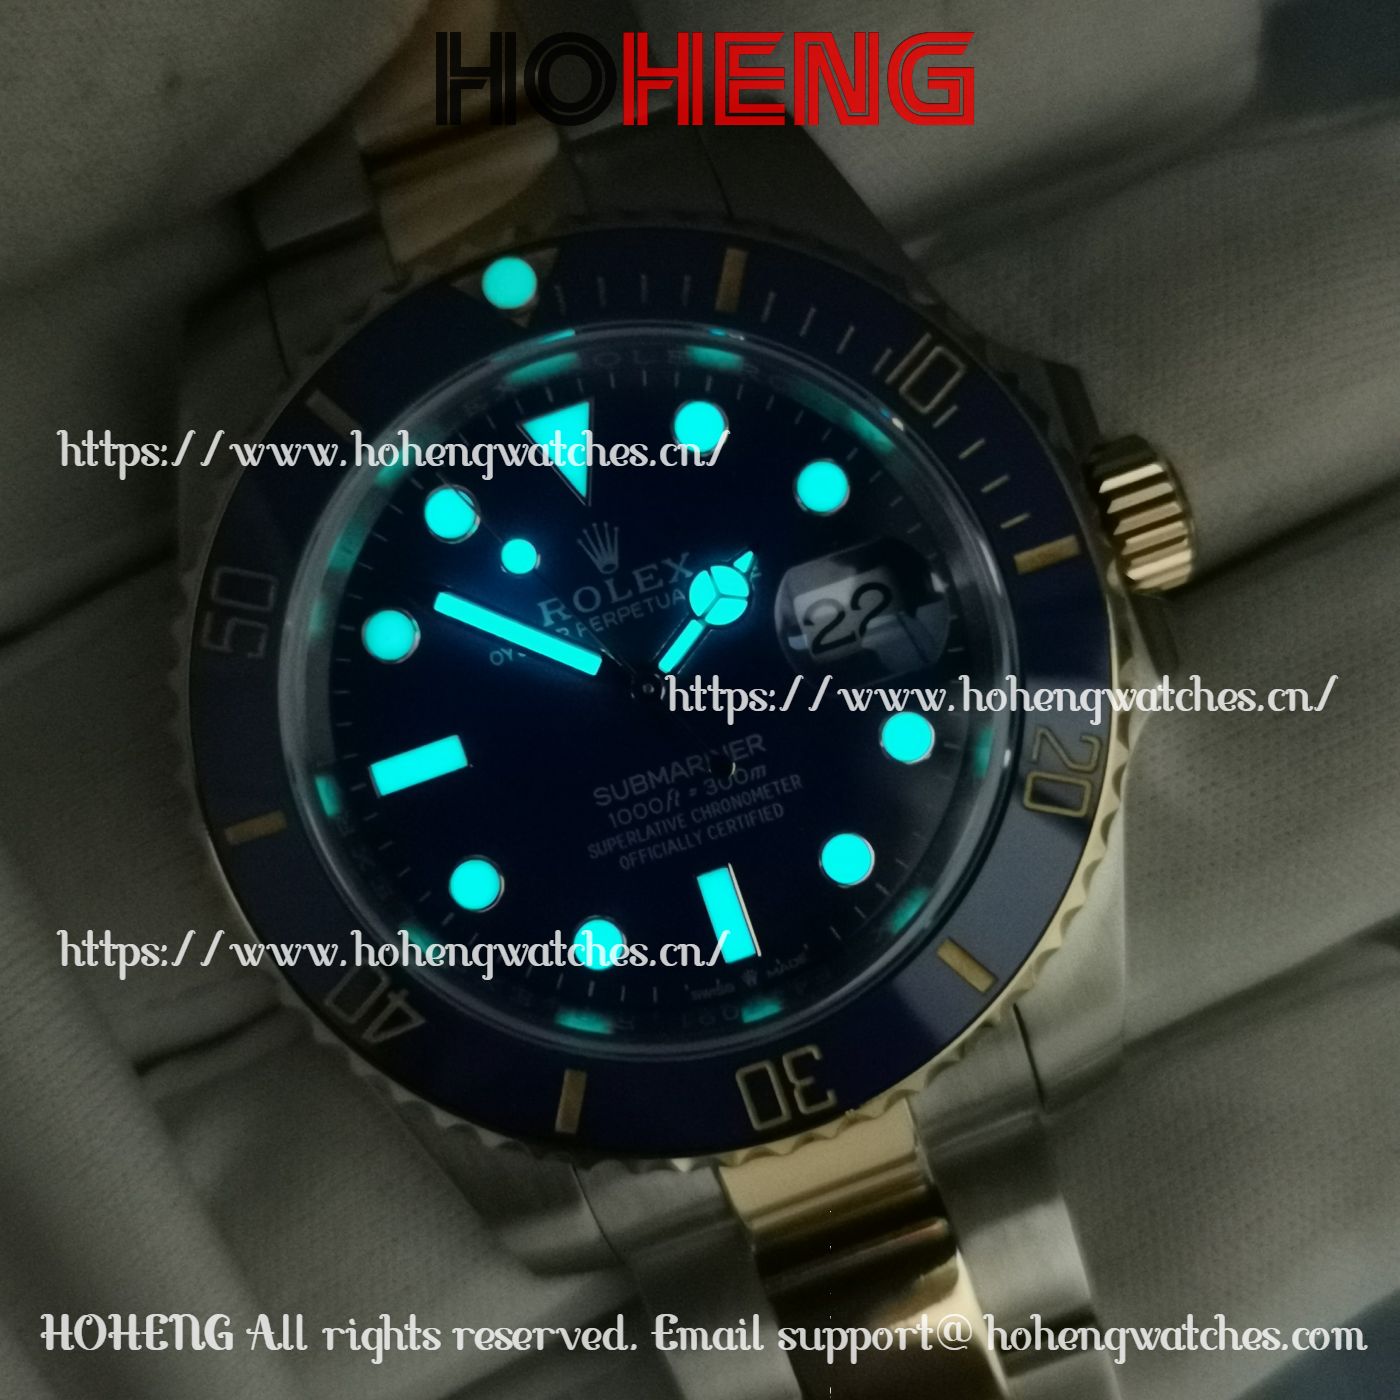 Rolex Submariner 126613 Blue Dial